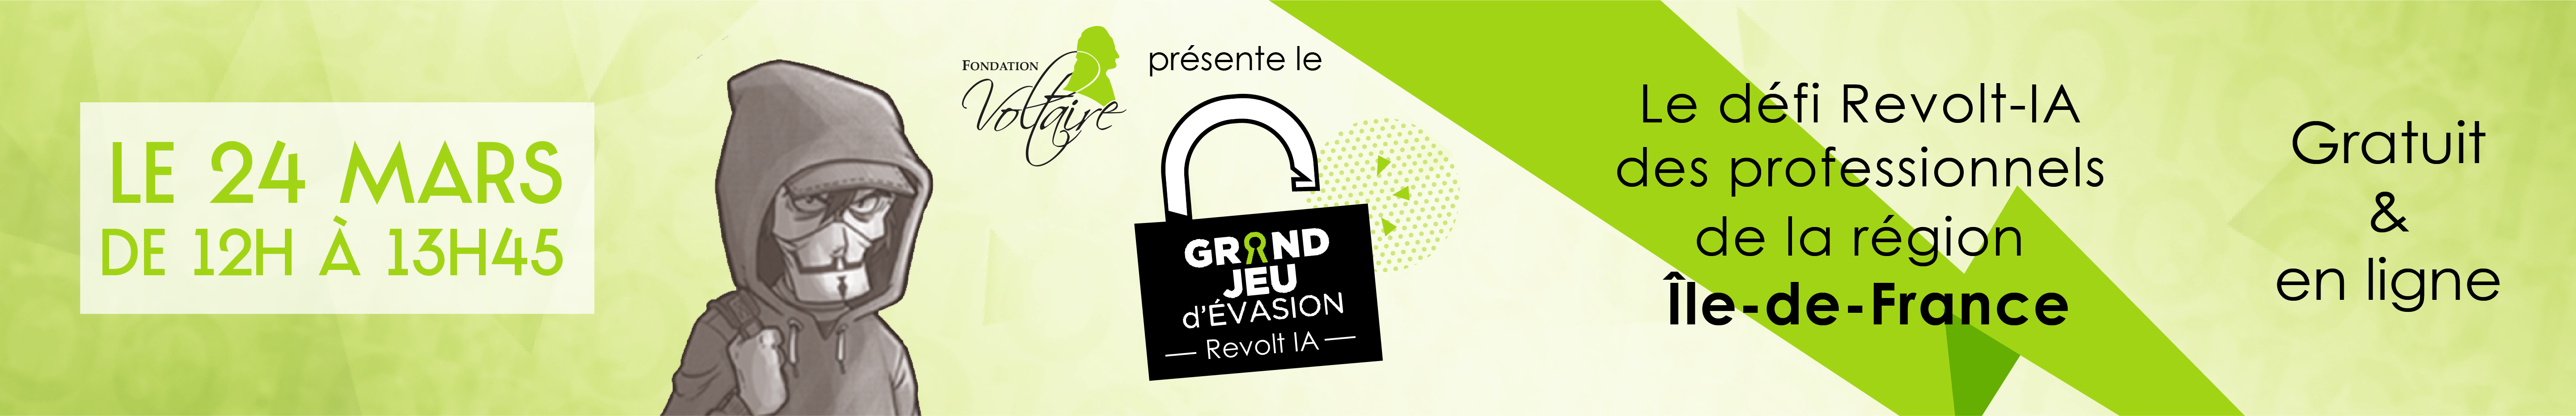 La Fondation Voltaire présente le défi Revolt-IA des professionnels de la région Île-de-France, le 24 mars. Gratuit et en ligne.